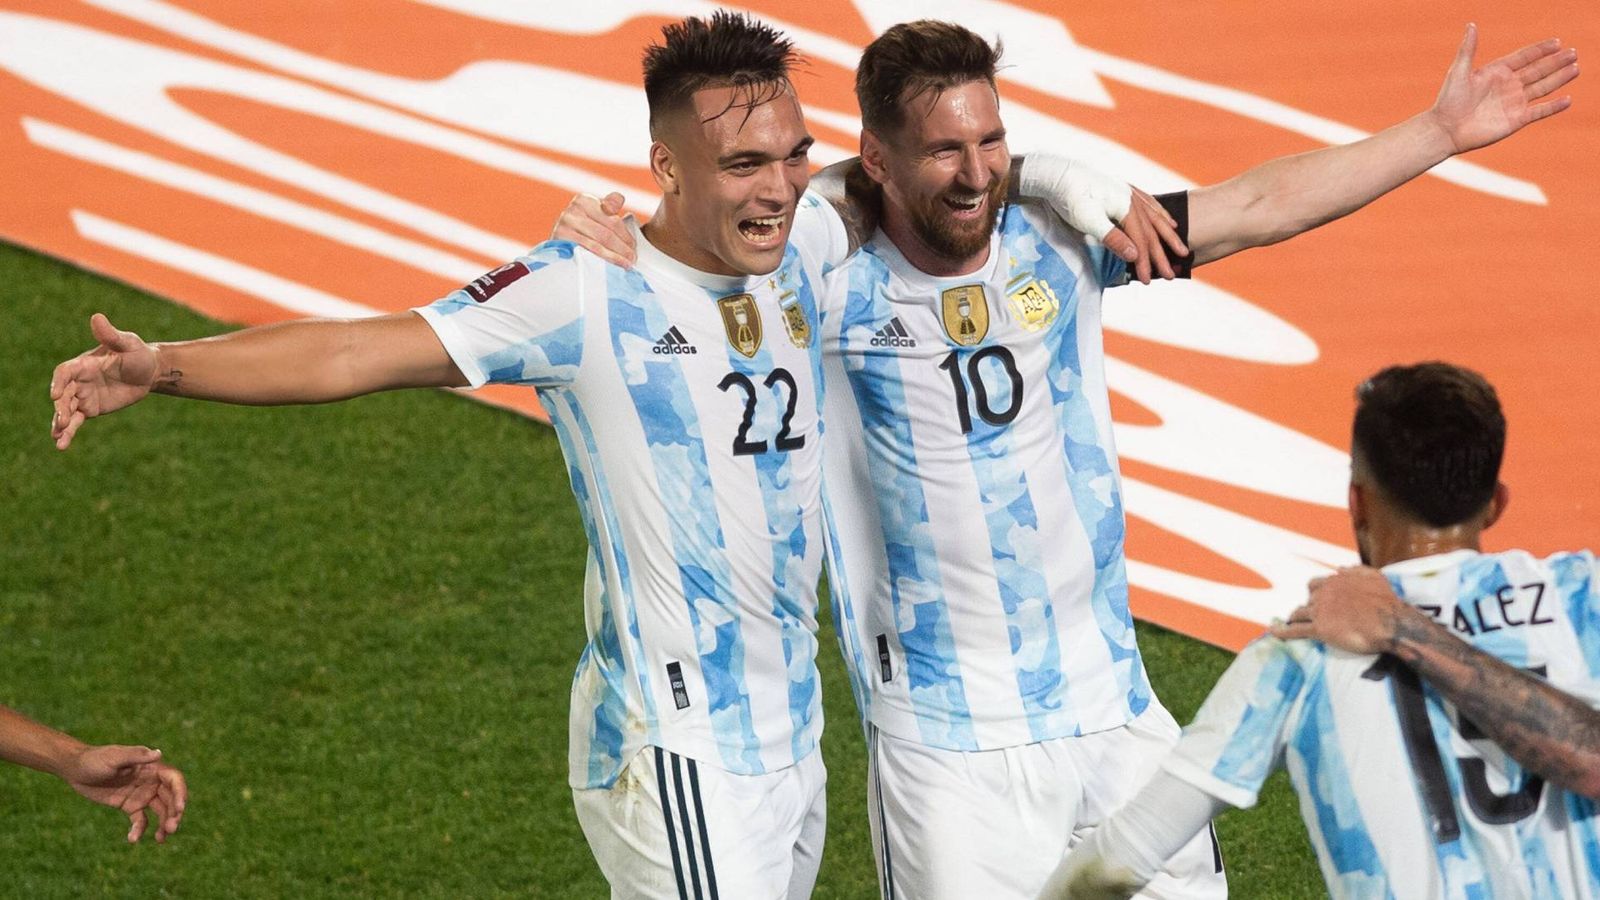 2022 ワールドカップ: アルゼンチン、ポーランド、メキシコ、サウジアラビア – グループ C がチェック | サッカーニュース